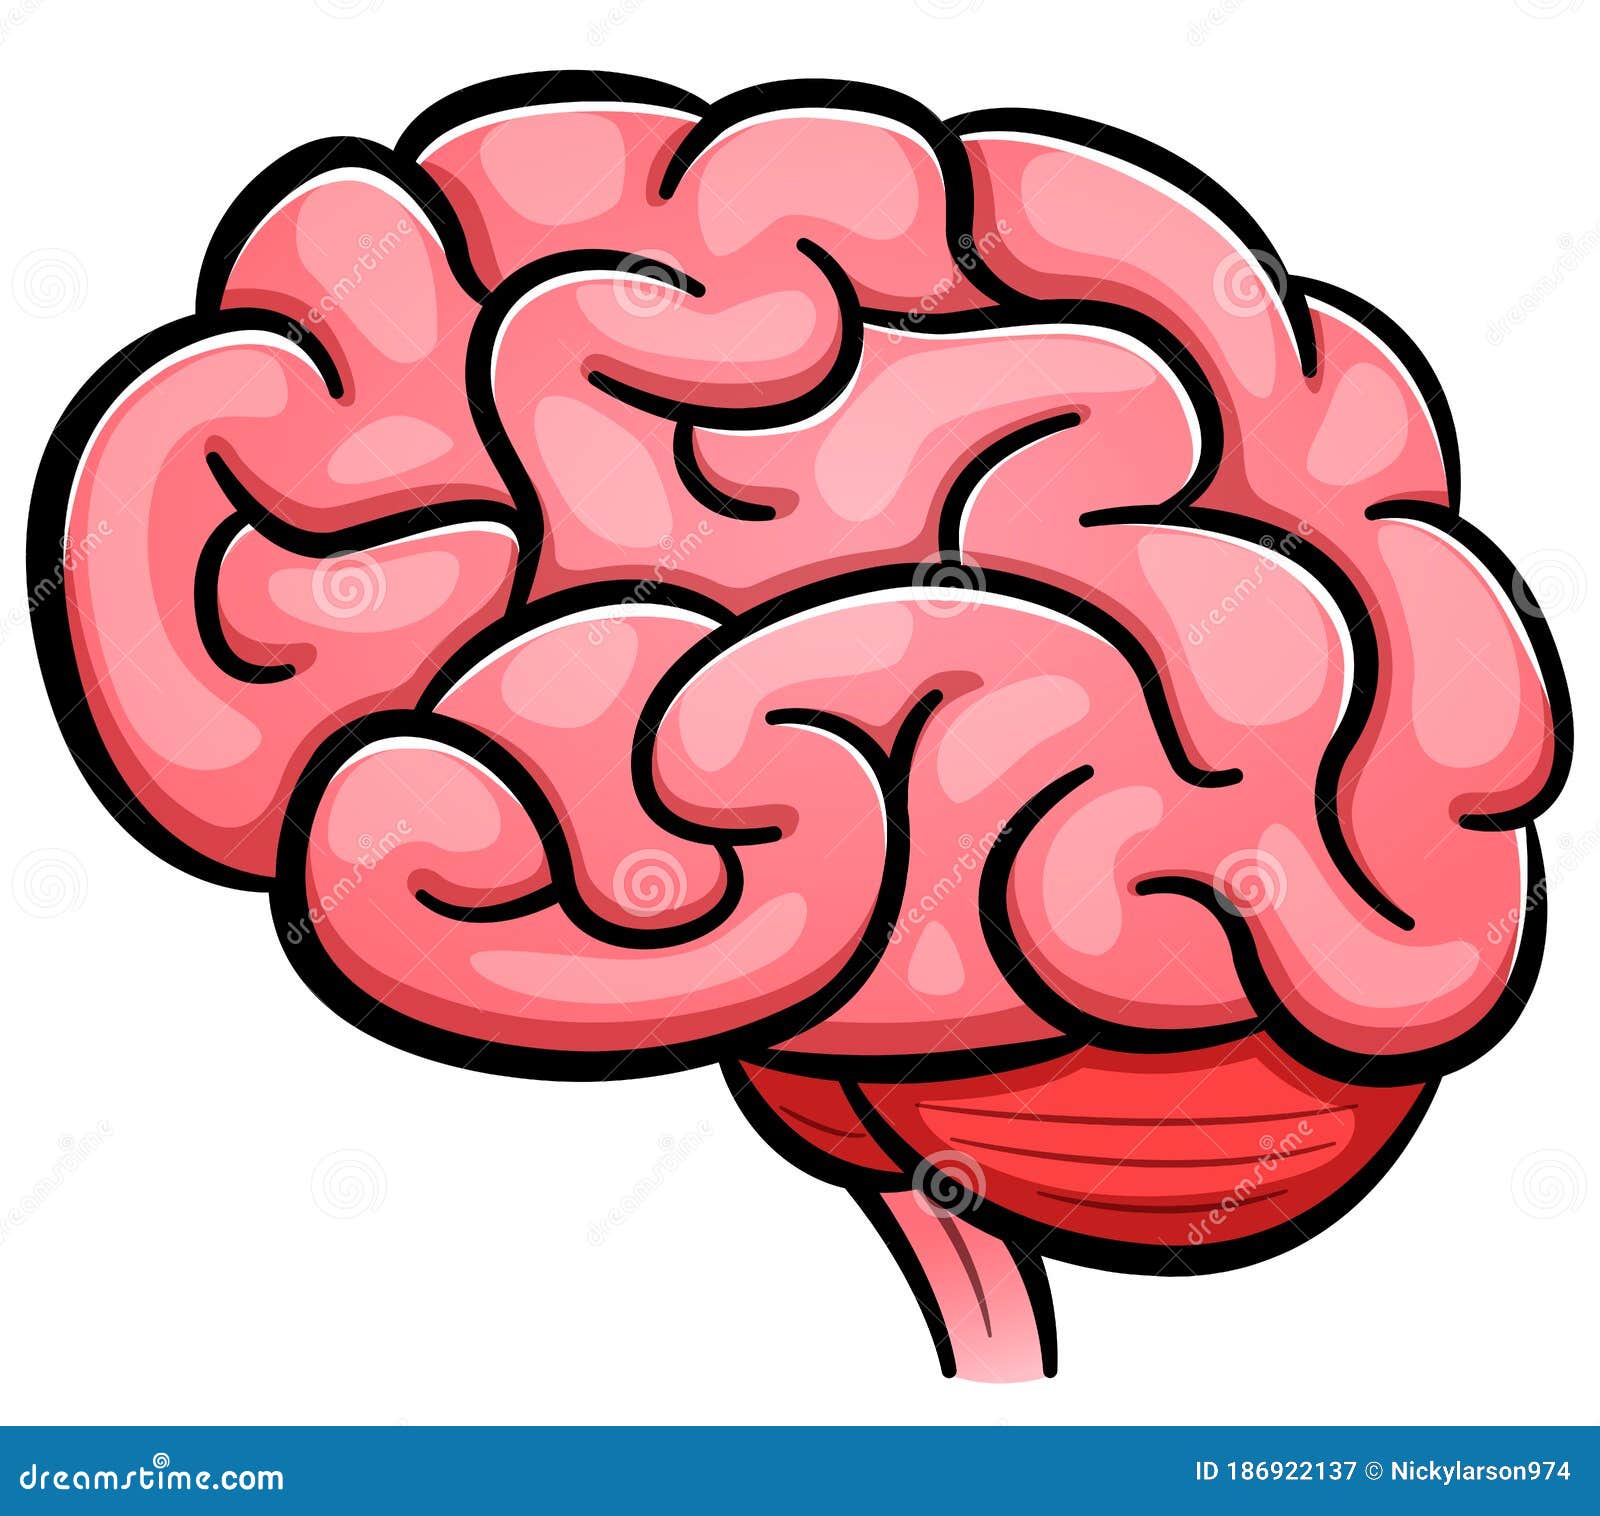 Brain Cartoon Stock Illustrations – 72,515 Brain Cartoon Stock  Illustrations, Vectors & Clipart - Dreamstime